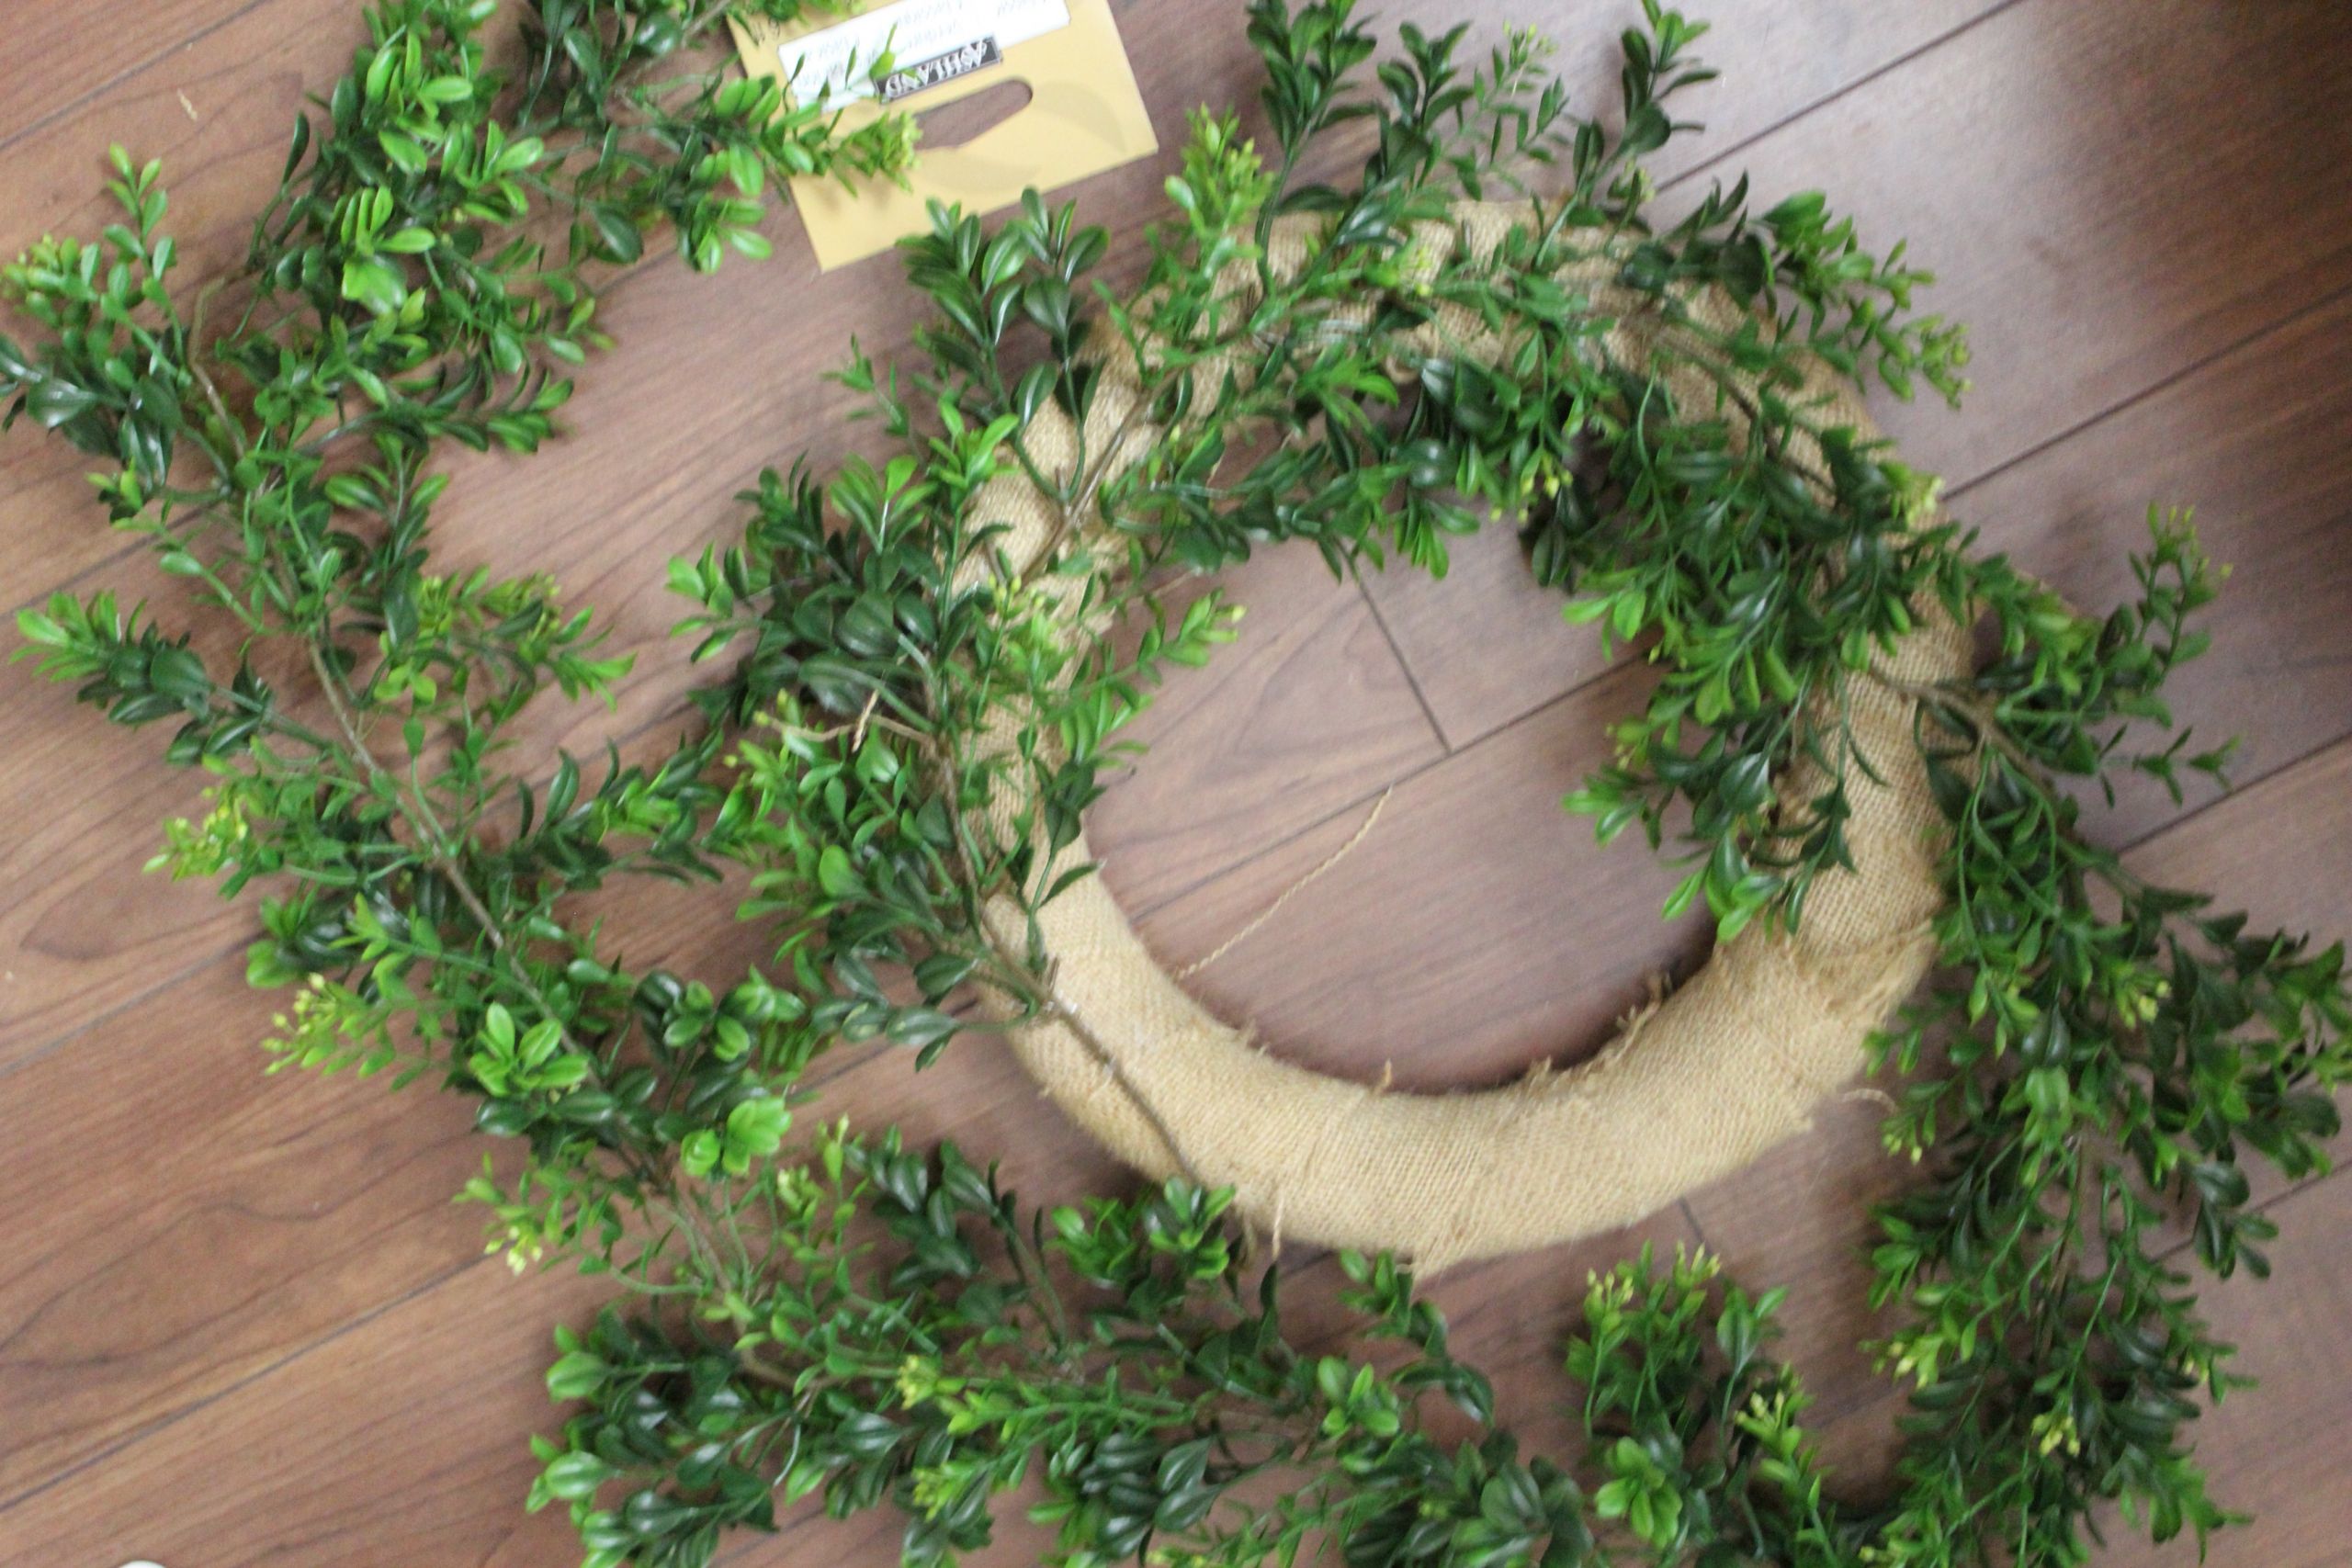 DIY Faux Boxwood Wreath
 DIY Faux Boxwood Wreath